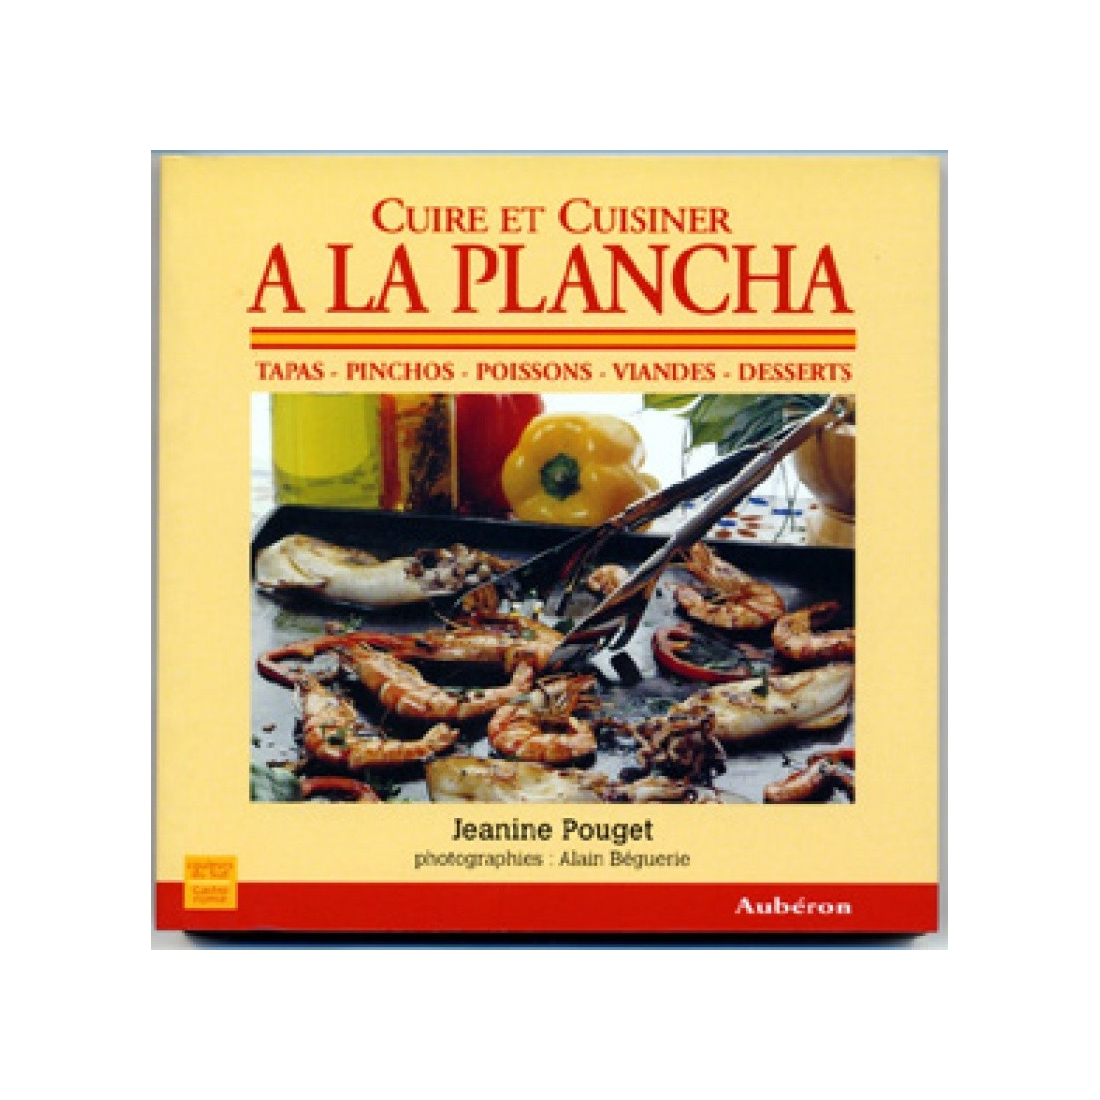 Cuire et Cuisiner a la Plancha A17-ED02 A la Plancha® Editions et Publications